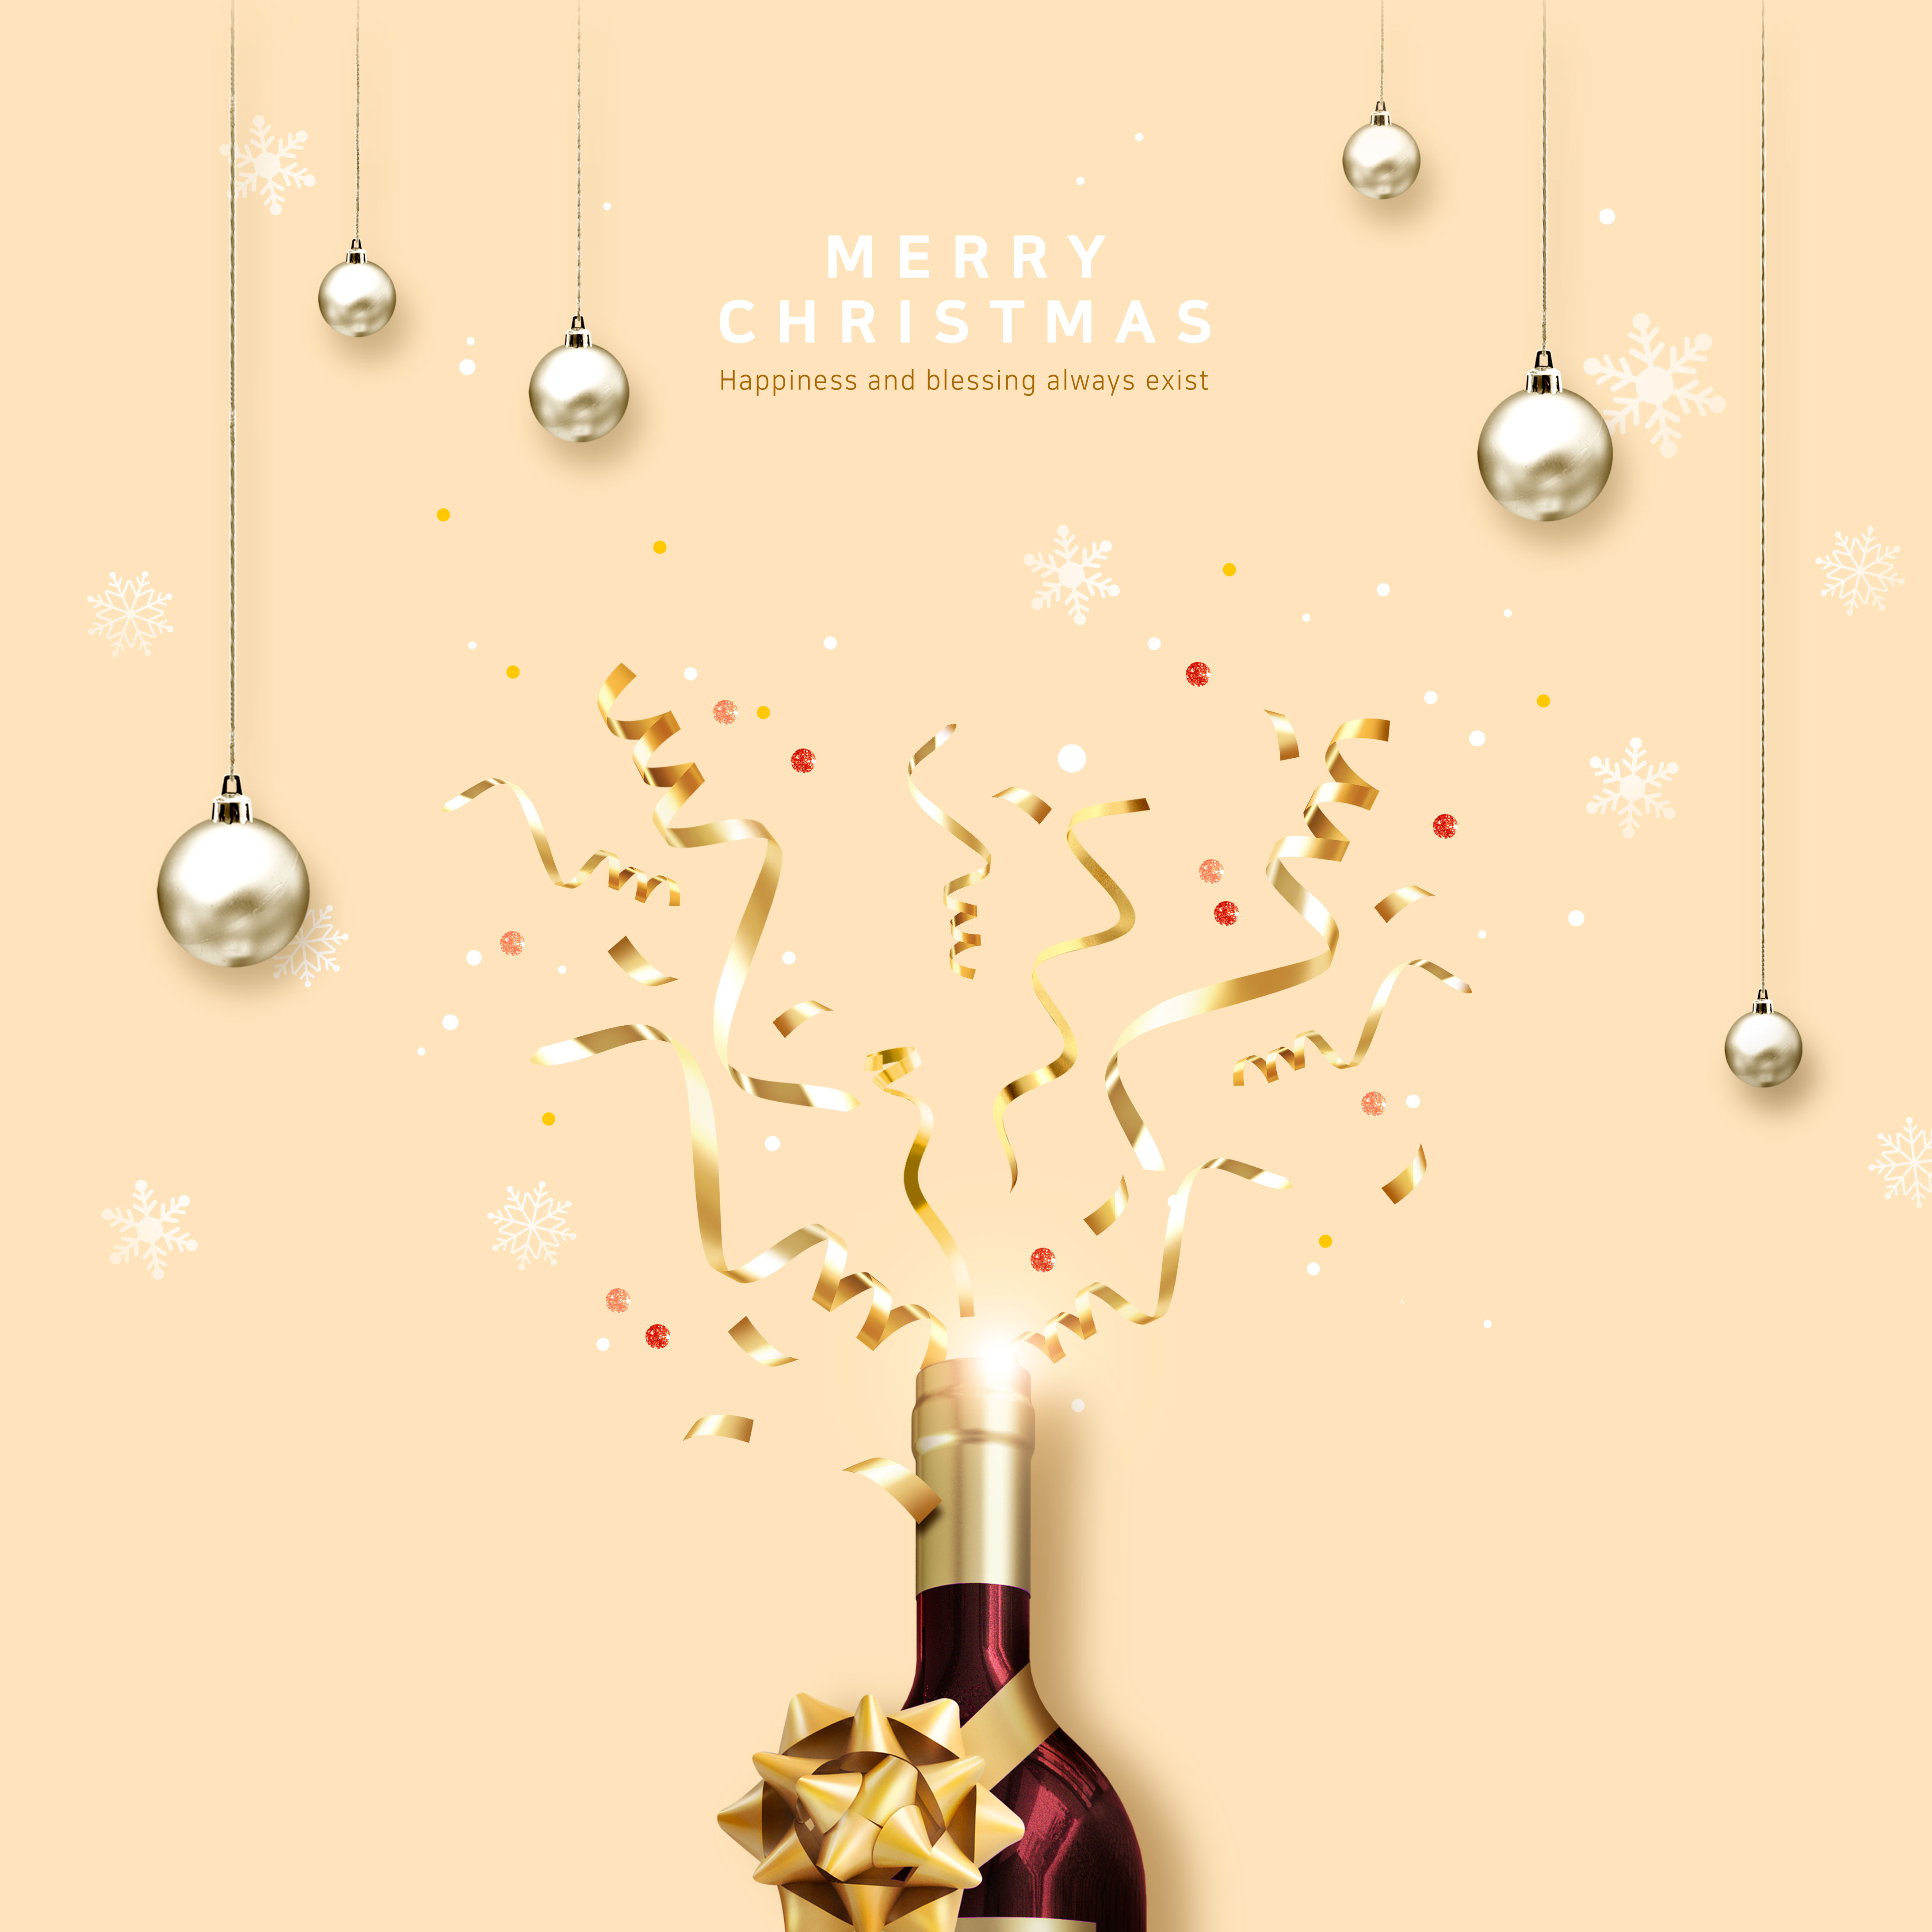 圣诞节日庆祝活动海报设计模板[PSD]插图